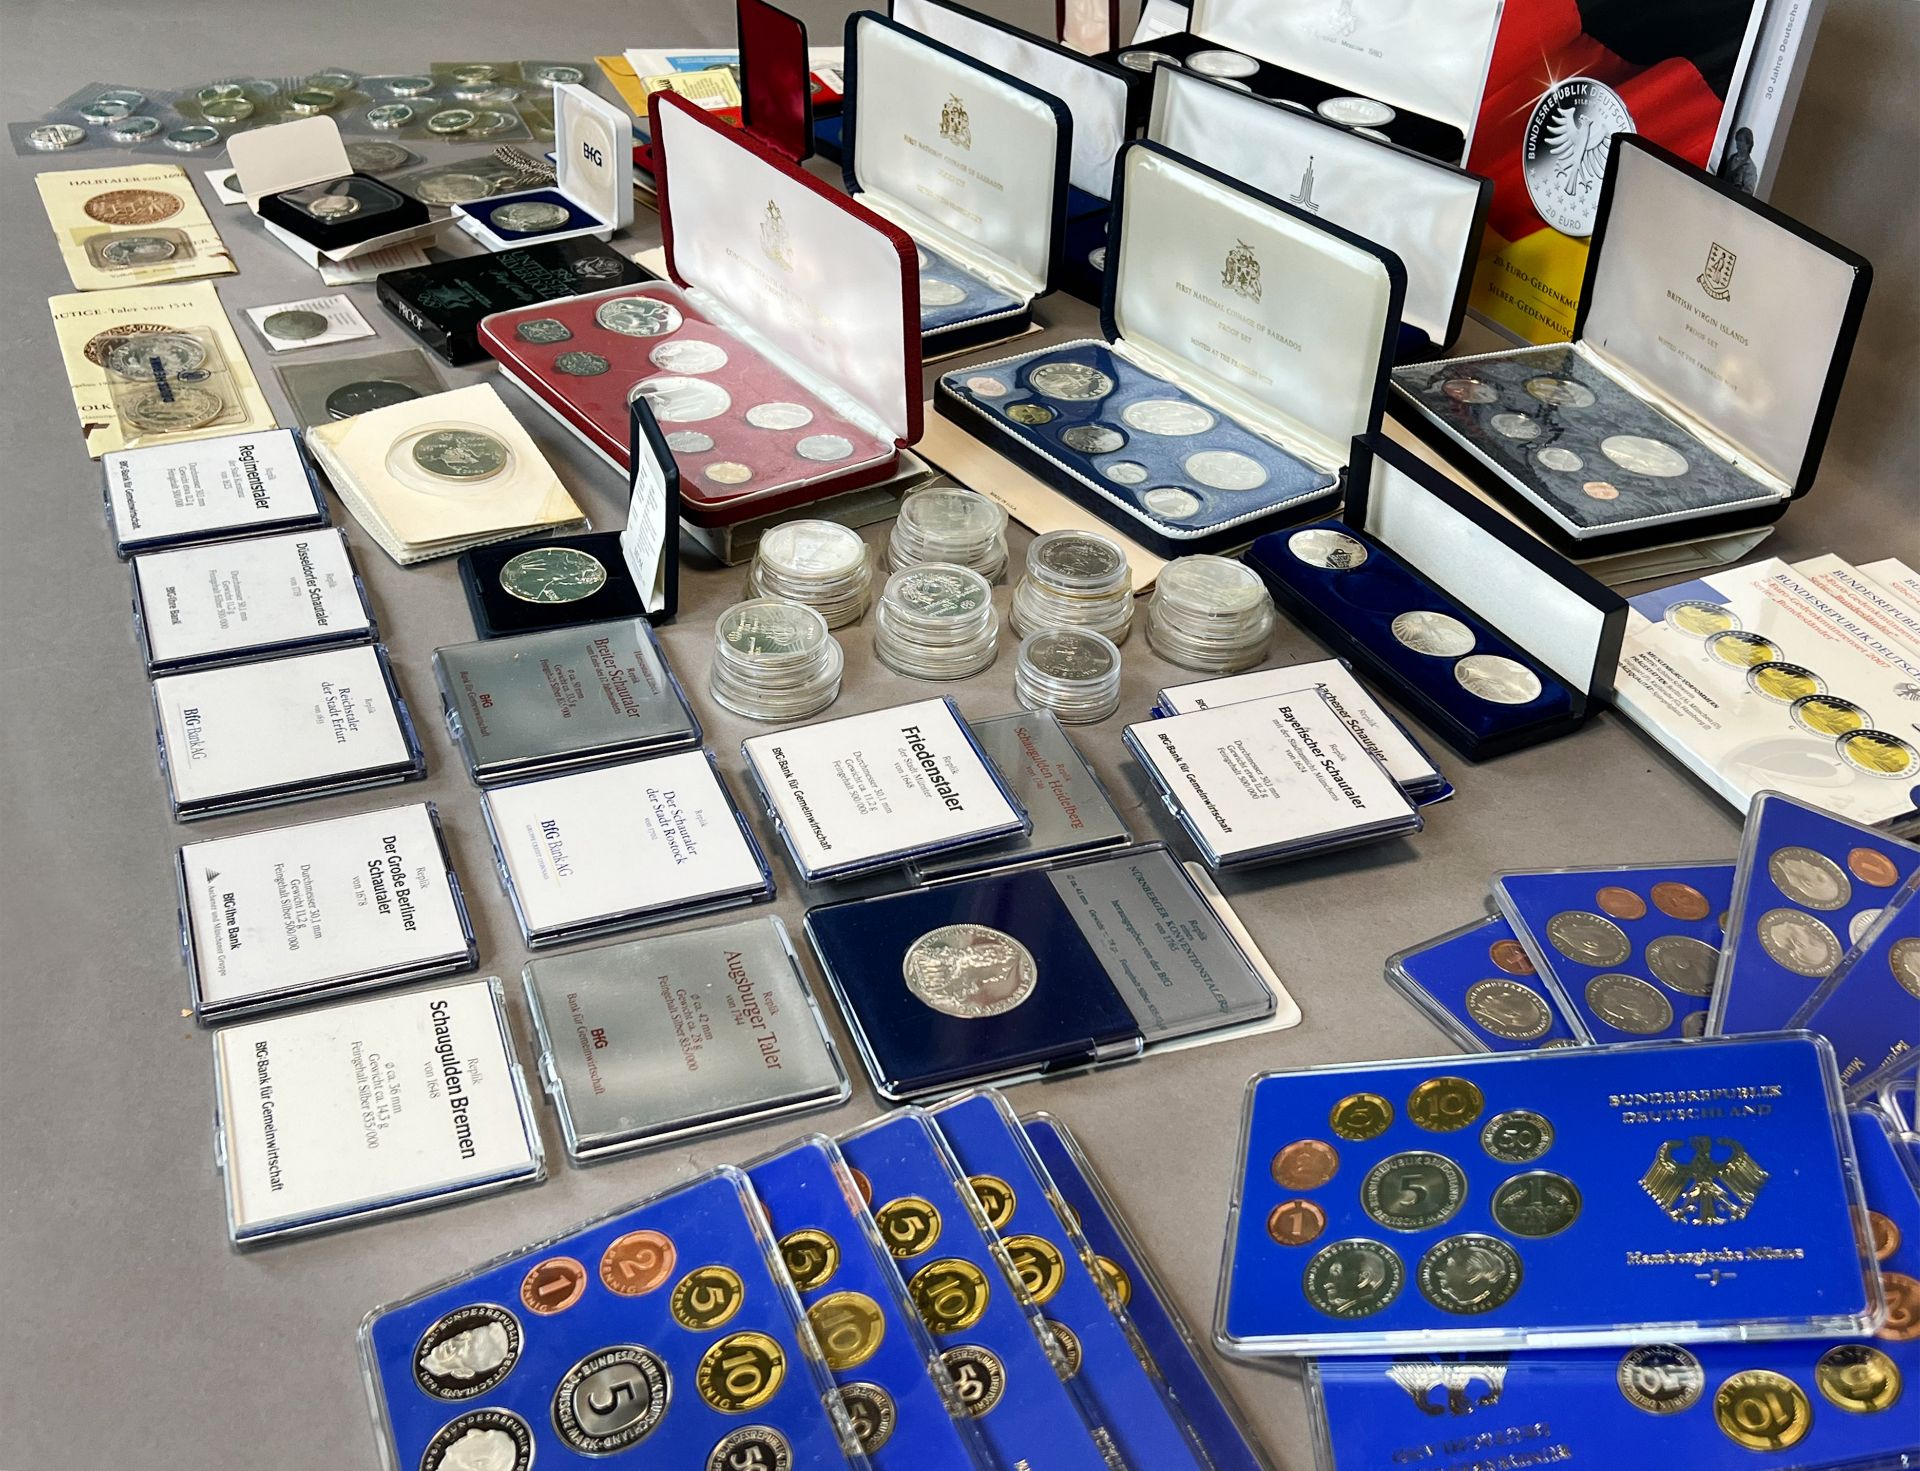 Große Sammlung von Münzen. Silbermünzen, Umlaufmünzen, DM-Münzen und Euro-Münzen. - Bild 9 aus 13